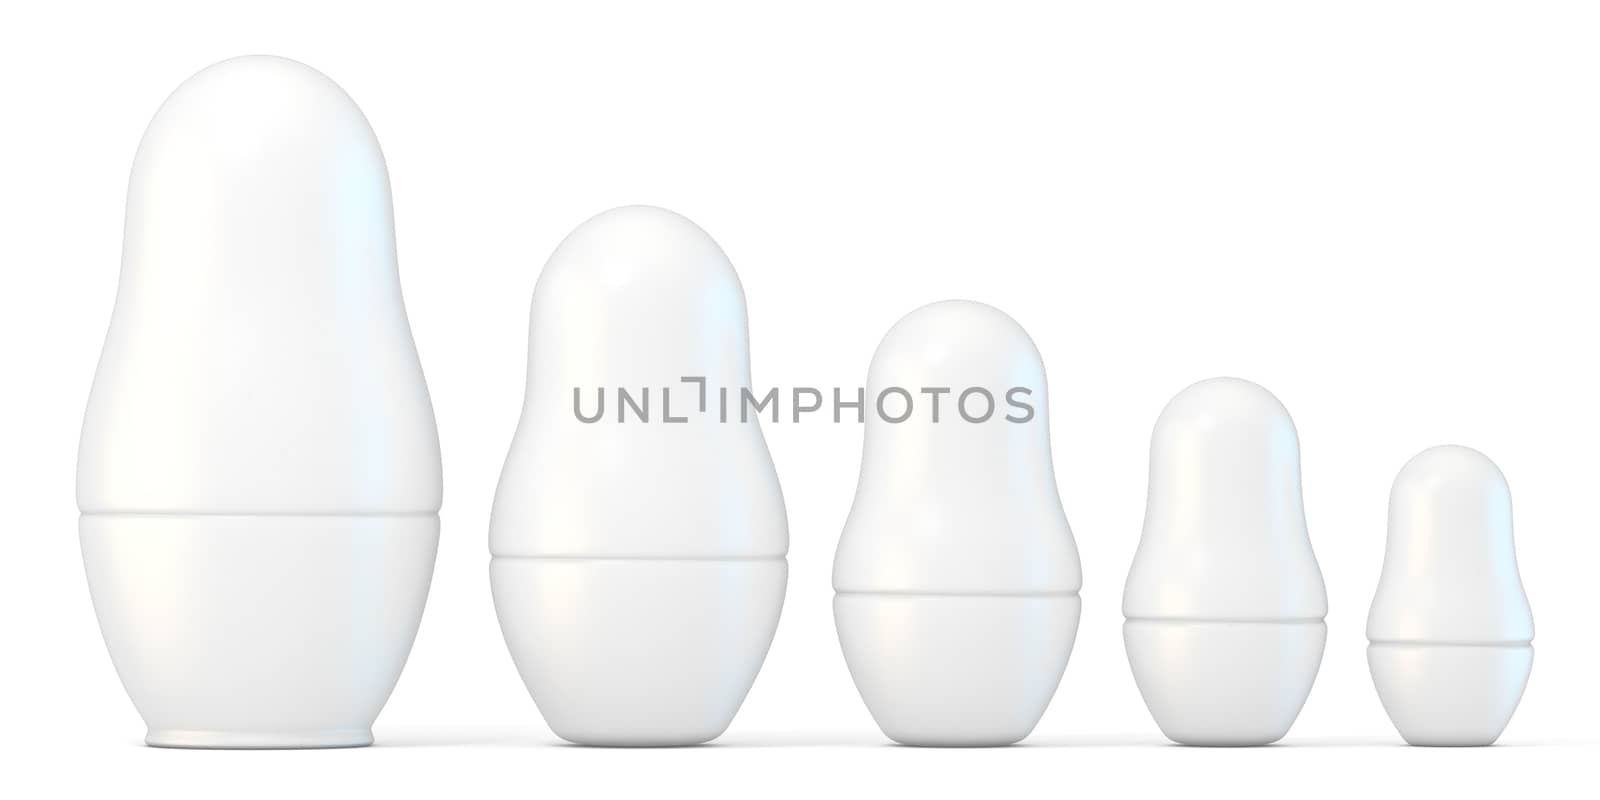 Set of white unpainted matryoshka dolls. 3D render illustration isolated on white background